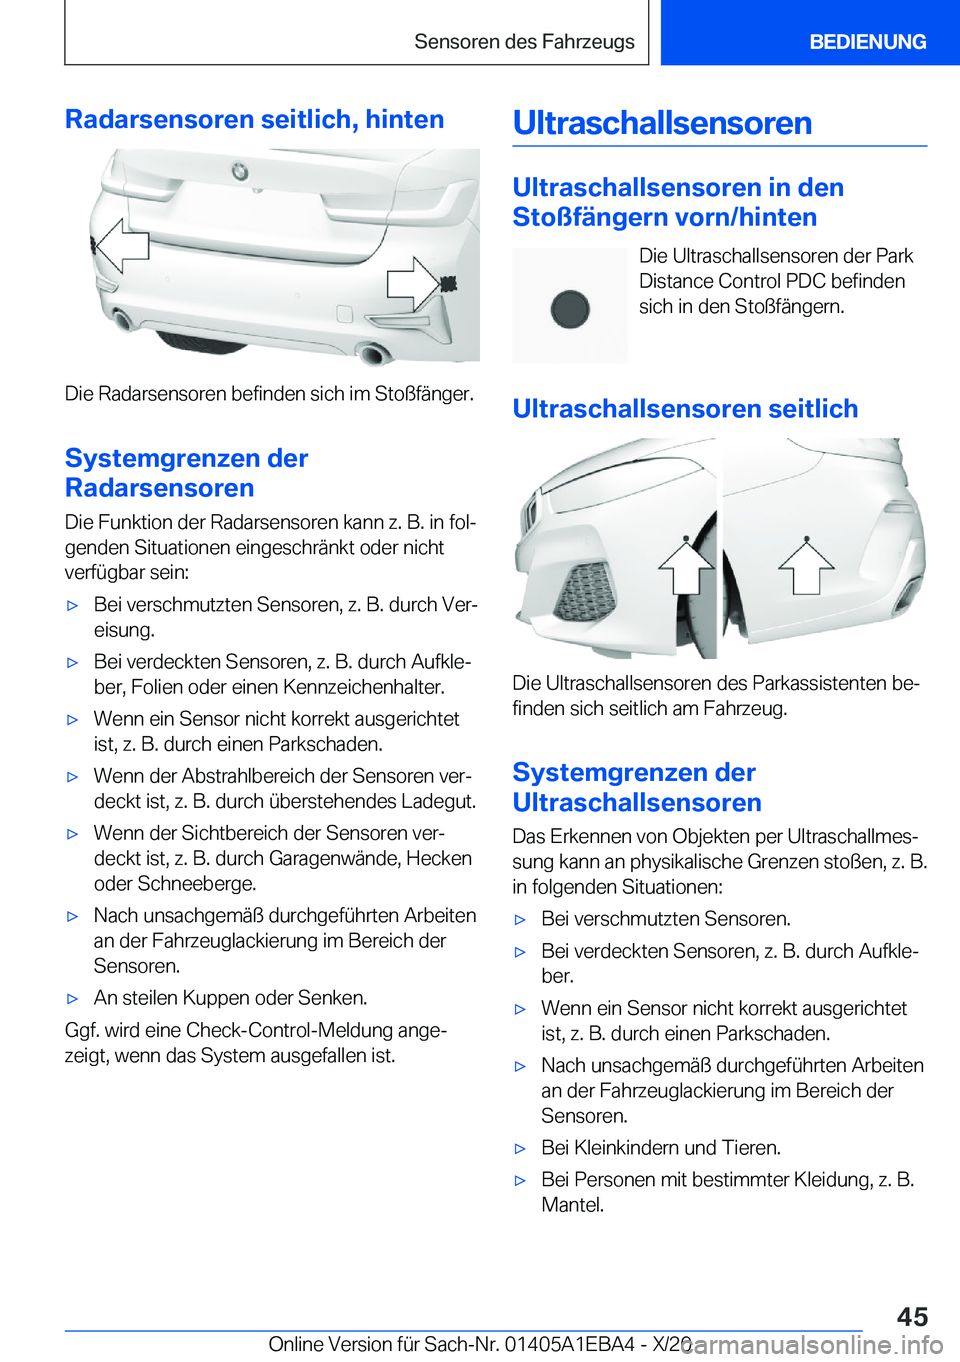 BMW 3 SERIES 2021  Betriebsanleitungen (in German) �R�a�d�a�r�s�e�n�s�o�r�e�n��s�e�i�t�l�i�c�h�,��h�i�n�t�e�n
�D�i�e��R�a�d�a�r�s�e�n�s�o�r�e�n��b�e�f�i�n�d�e�n��s�i�c�h��i�m��S�t�o�